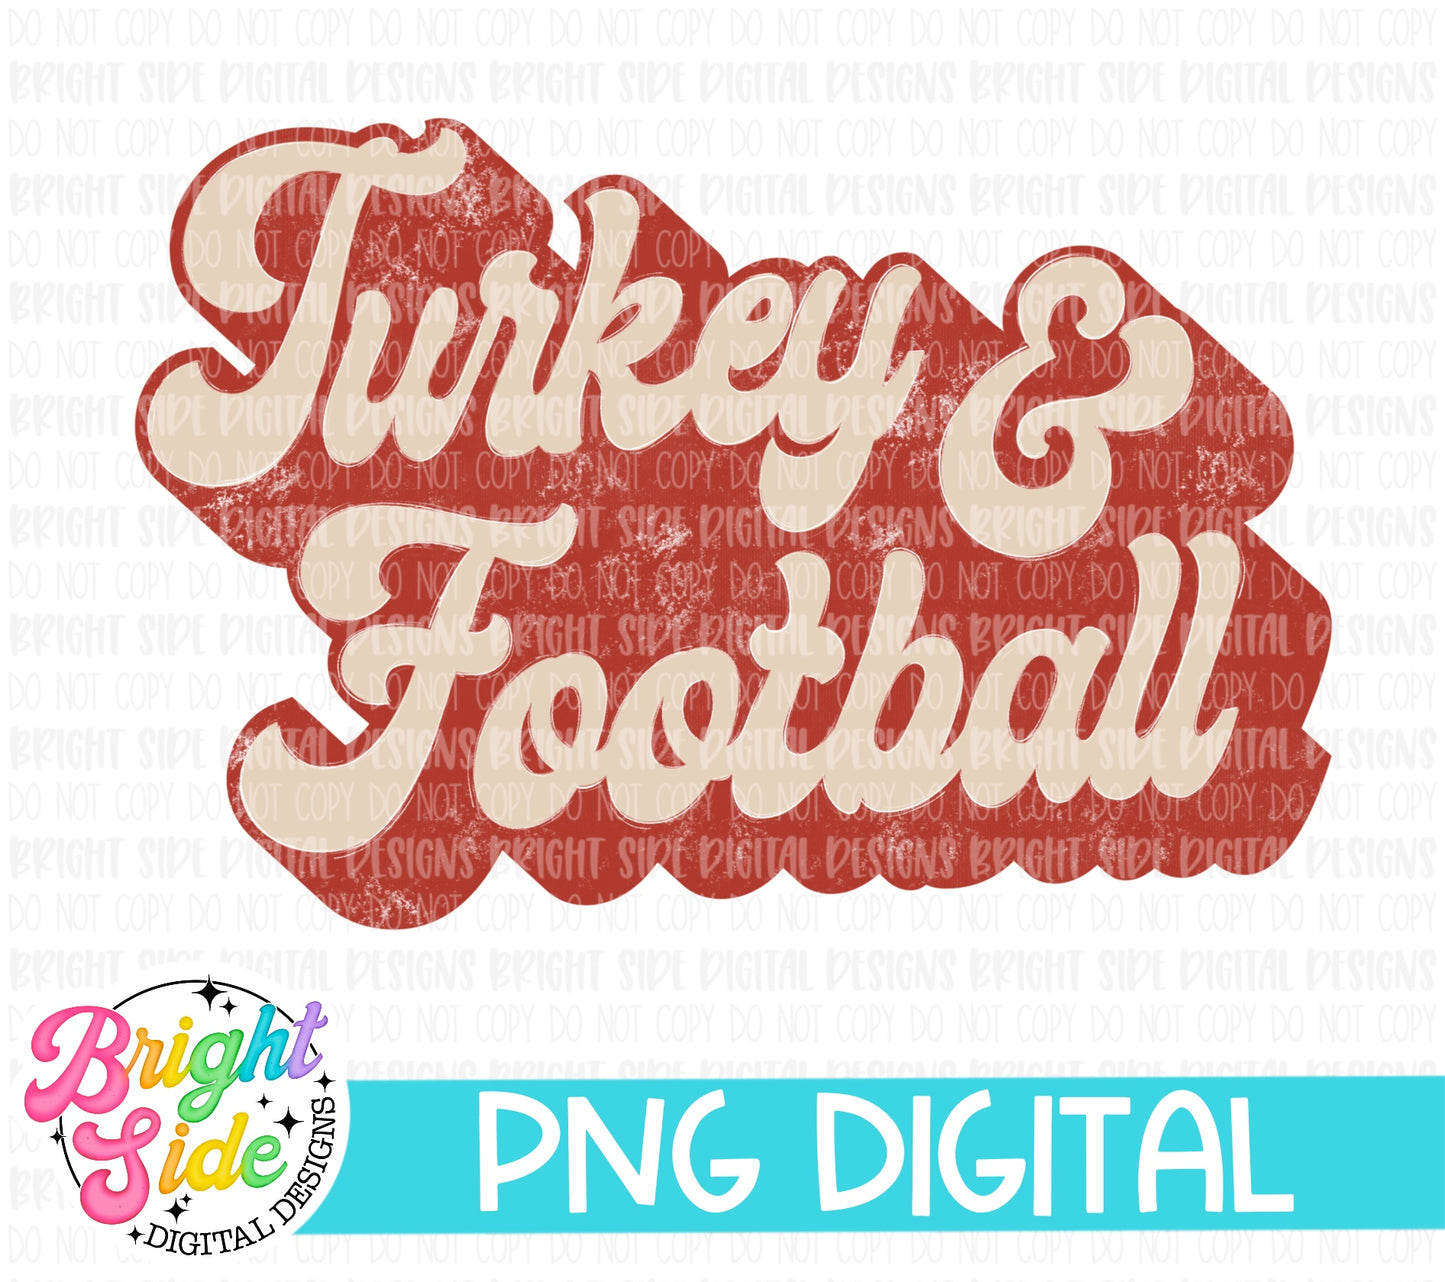 Retro Turkey and Football